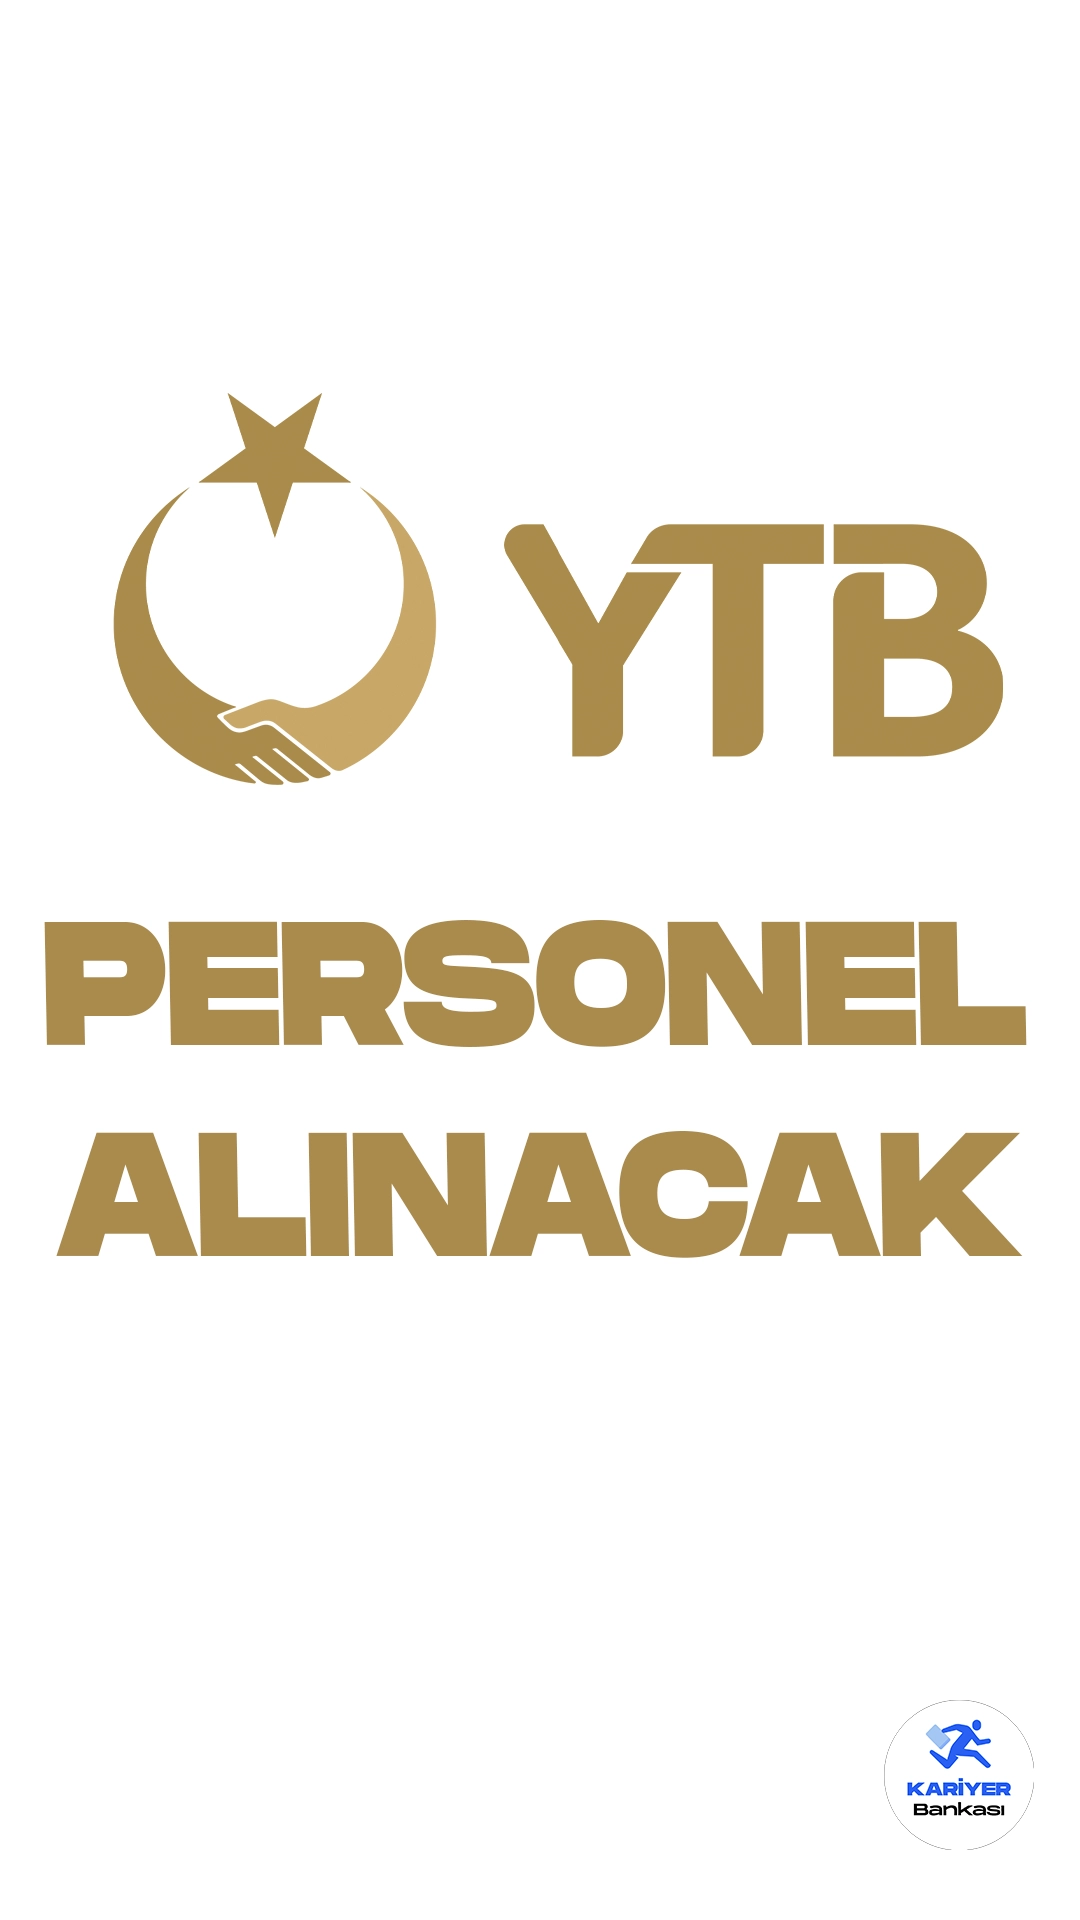 Yurtdışı Türkler ve Akraba Topluluklar Başkanlığı (YTB) personel alımı duyurusu yayımlandı. Resmi Gazete'de yayımlanan duyuruya göre, YTB'ye sözleşmeli personel alımı yapılacak. Başvurular 14 Kasım itibarıyla alınacak. Başvuru yapacak adayların belirtilen genel ve özel şartları dikkatle incelemesi gerekmektedir.